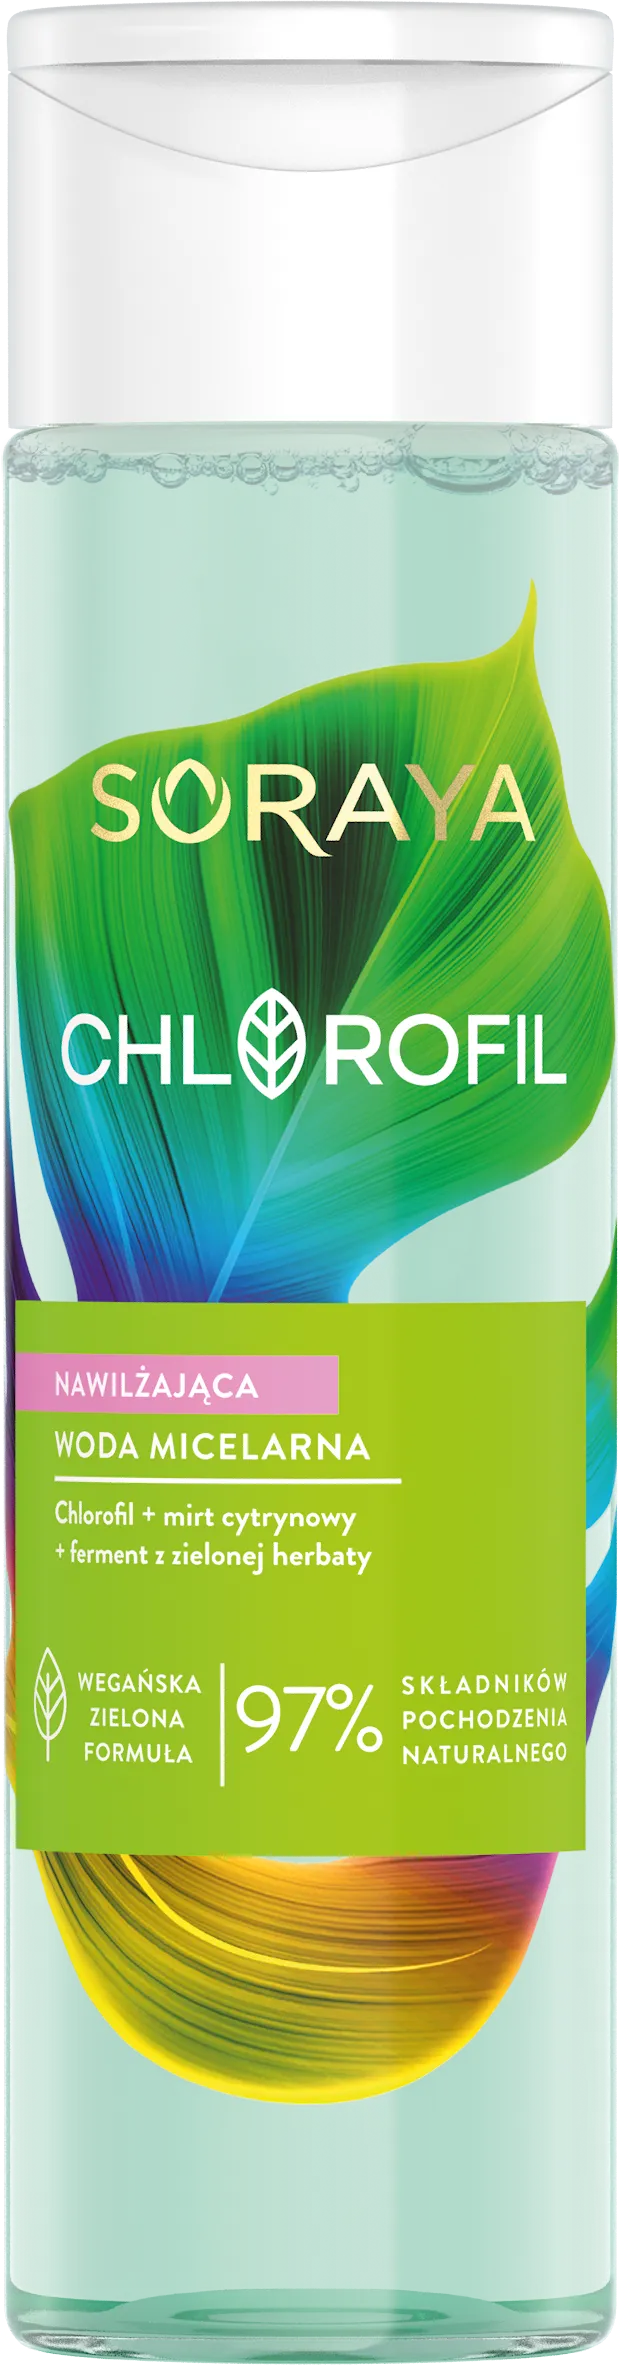 Soraya Chlorofil nawilżająca woda micelarna, 250 ml